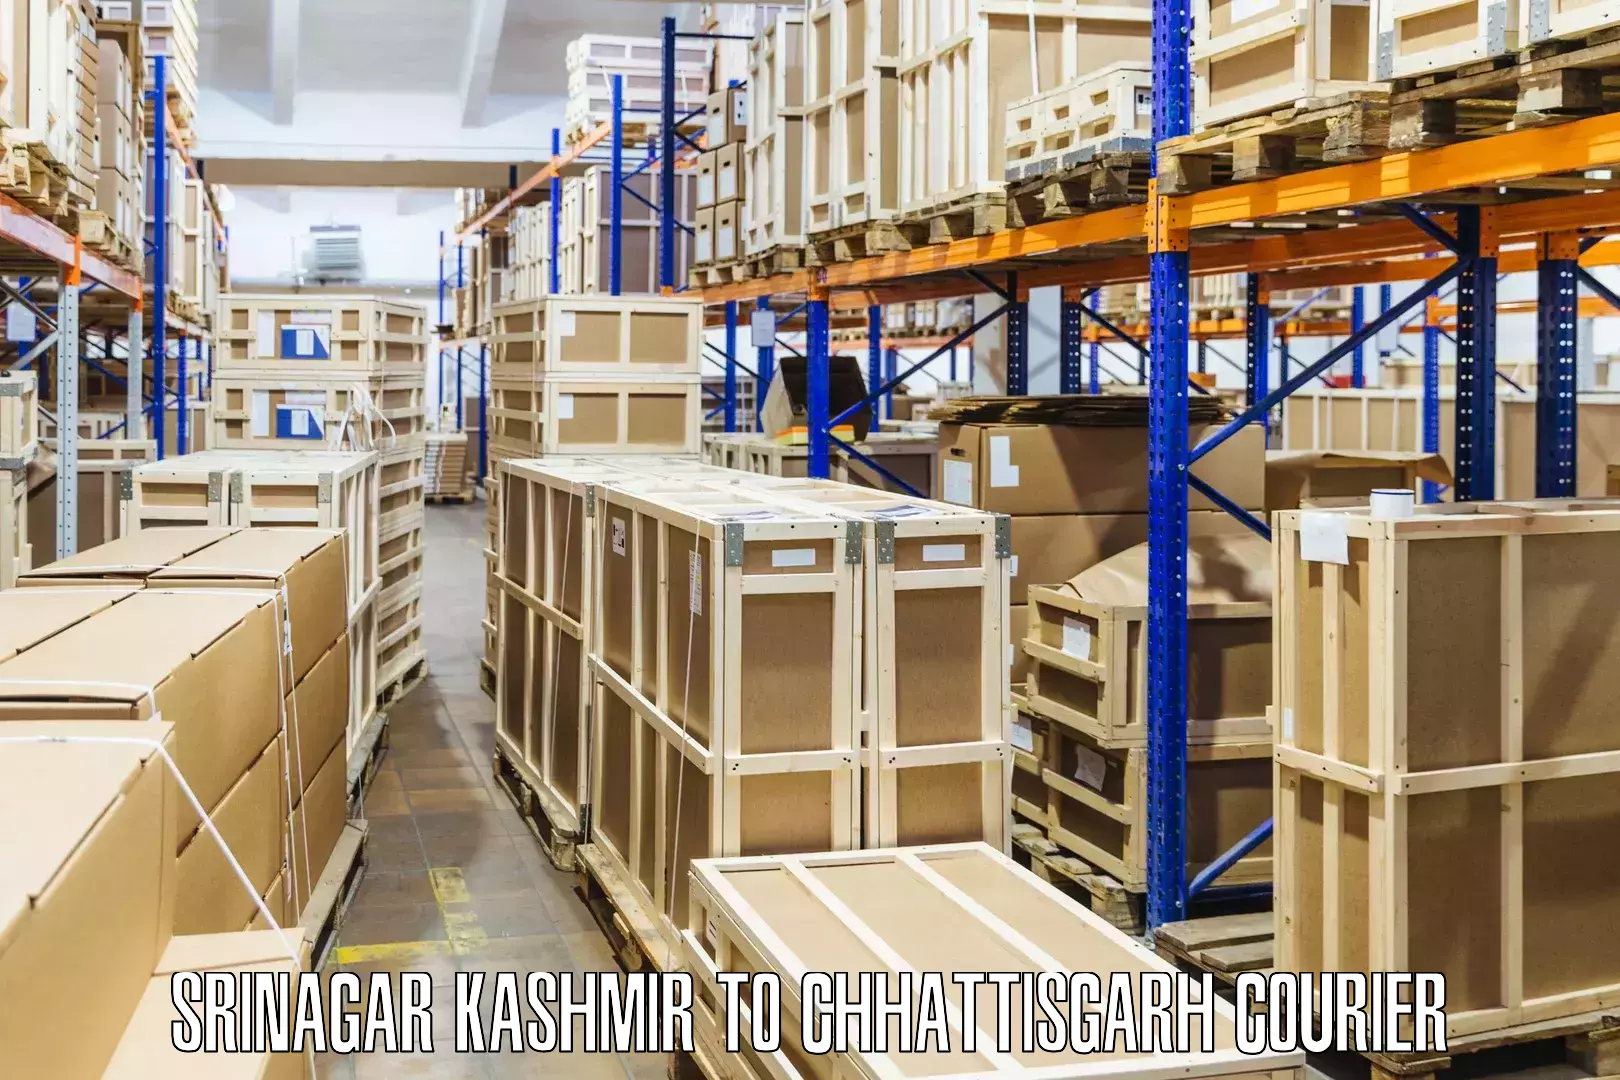 Customer-centric shipping Srinagar Kashmir to Bilaspur